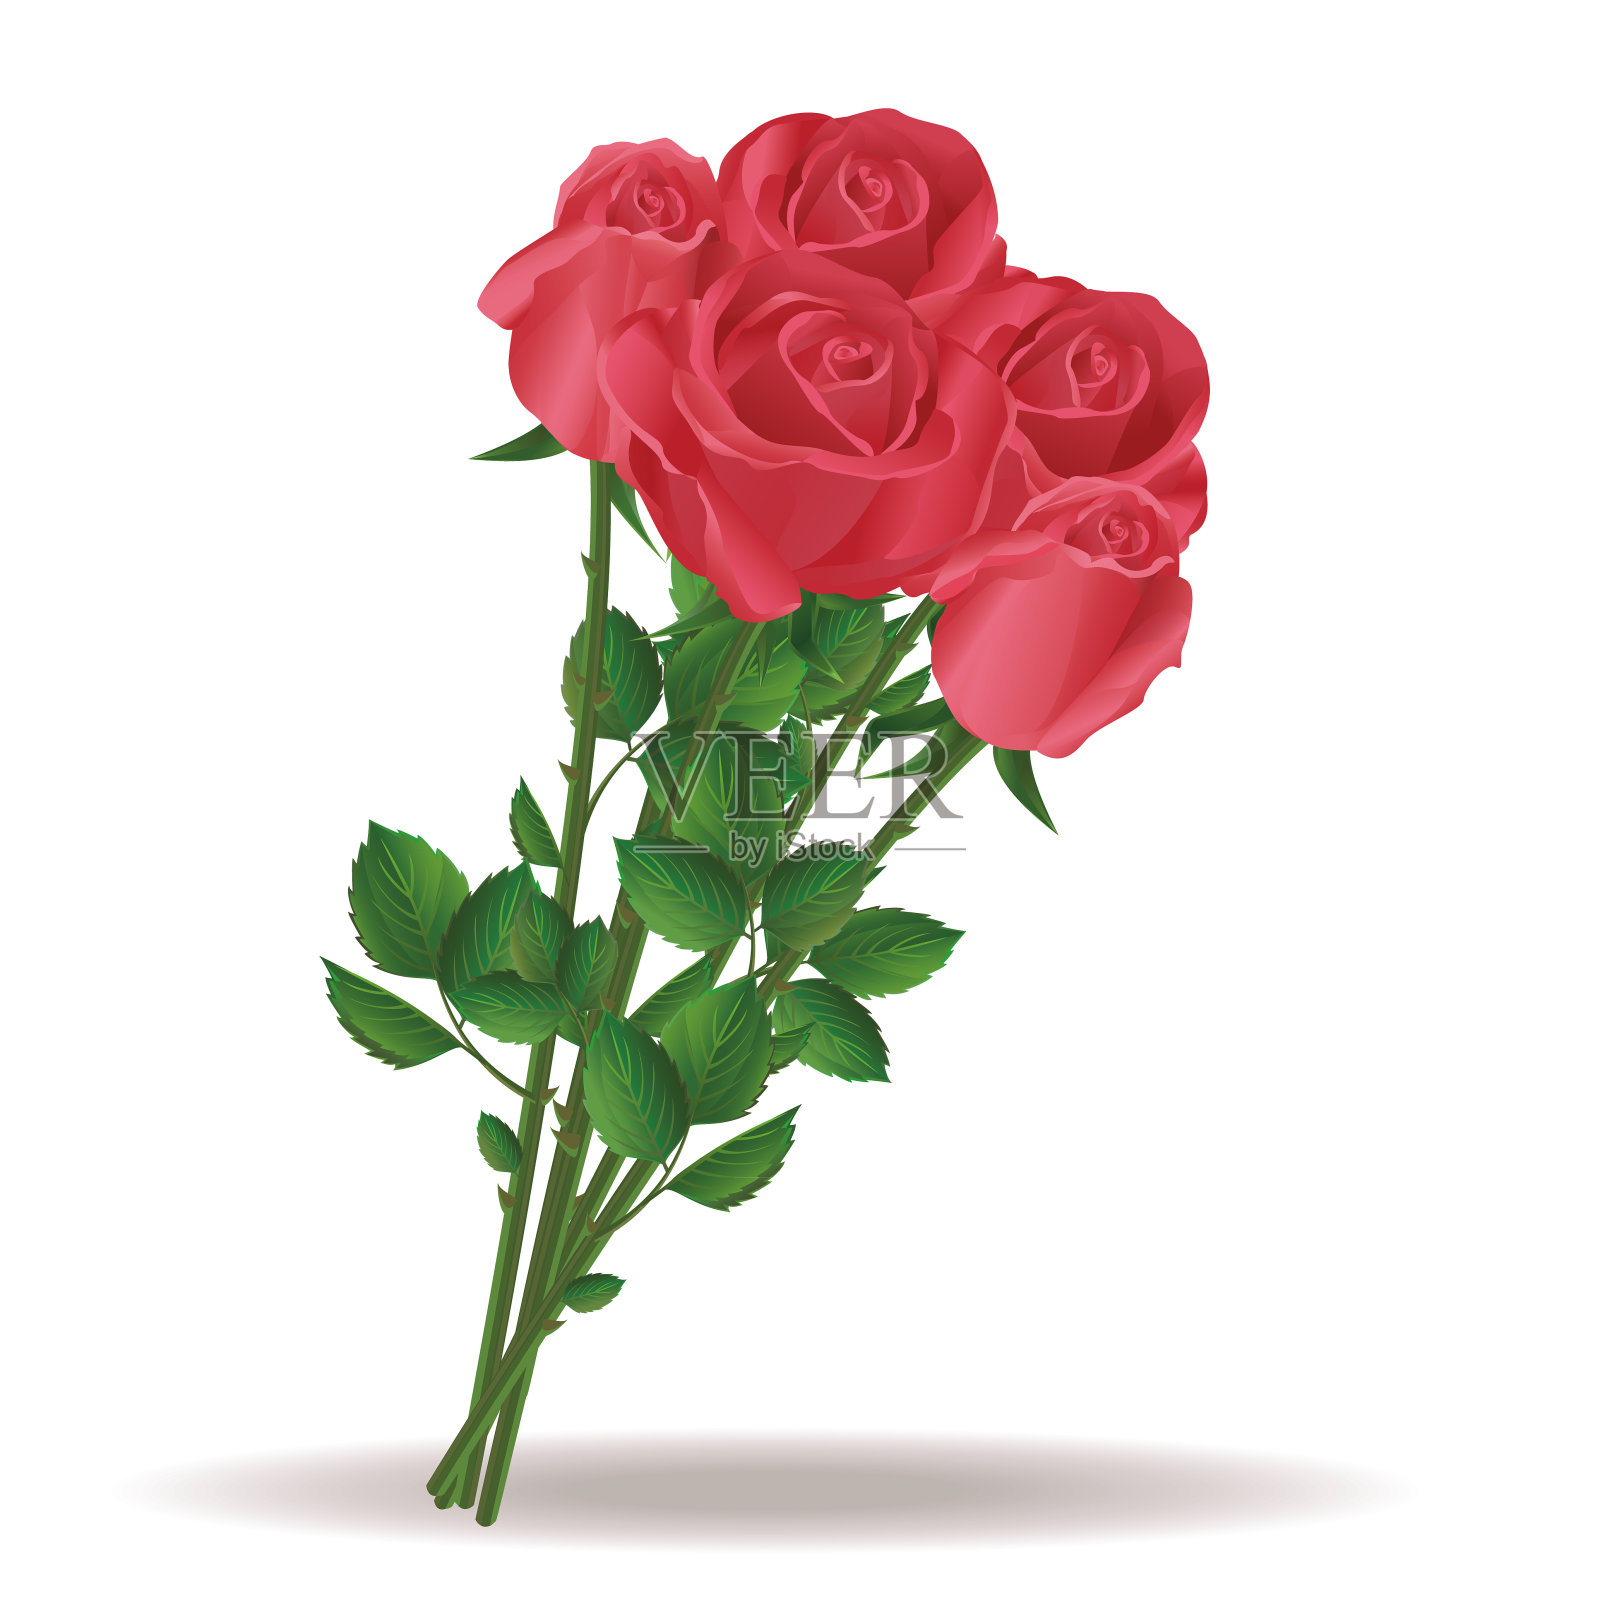 一束美丽的红玫瑰设计元素图片